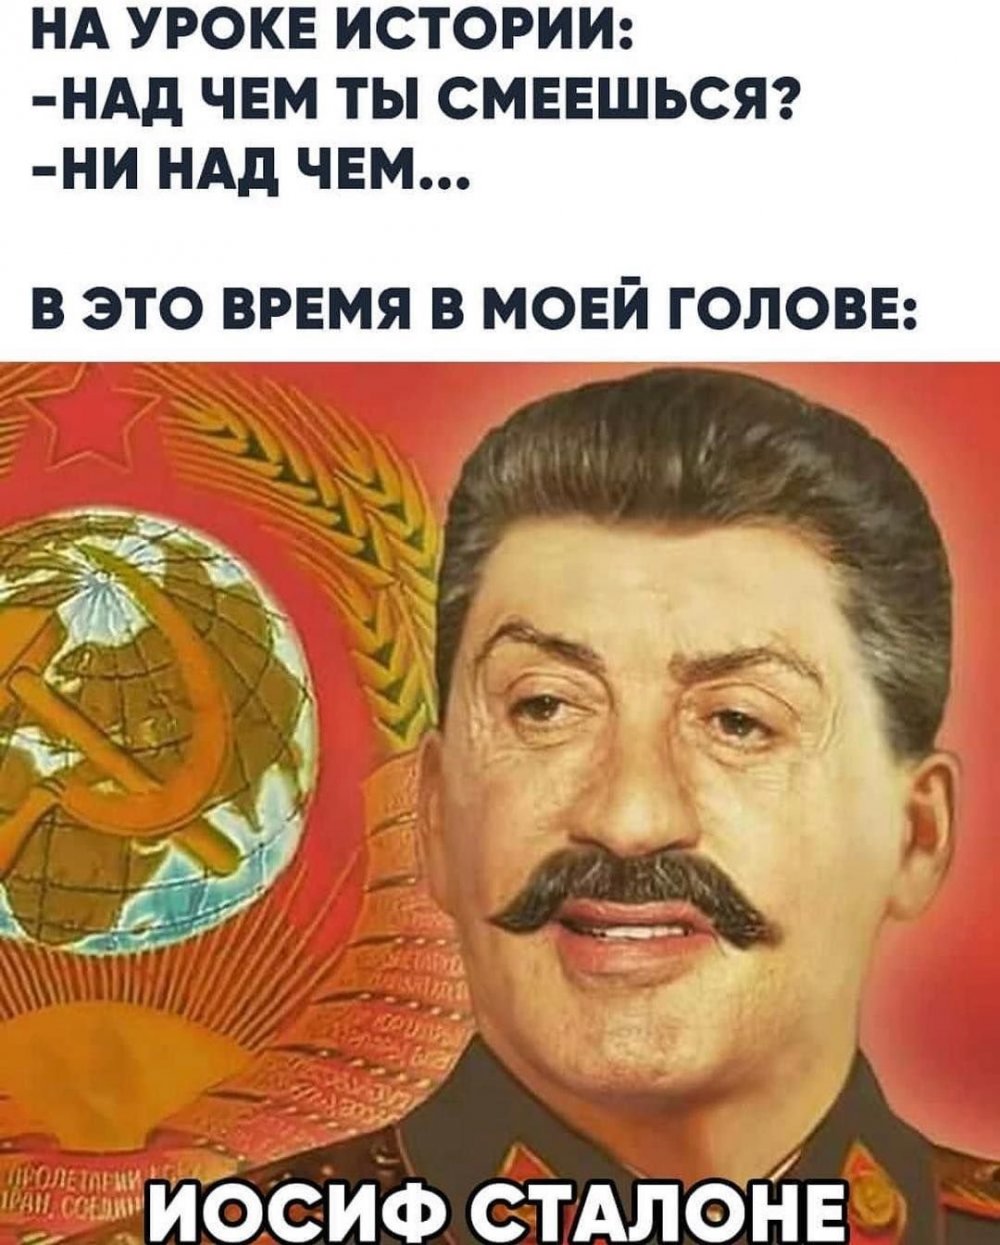 Анекдоты про Сталина за которые расстреливали